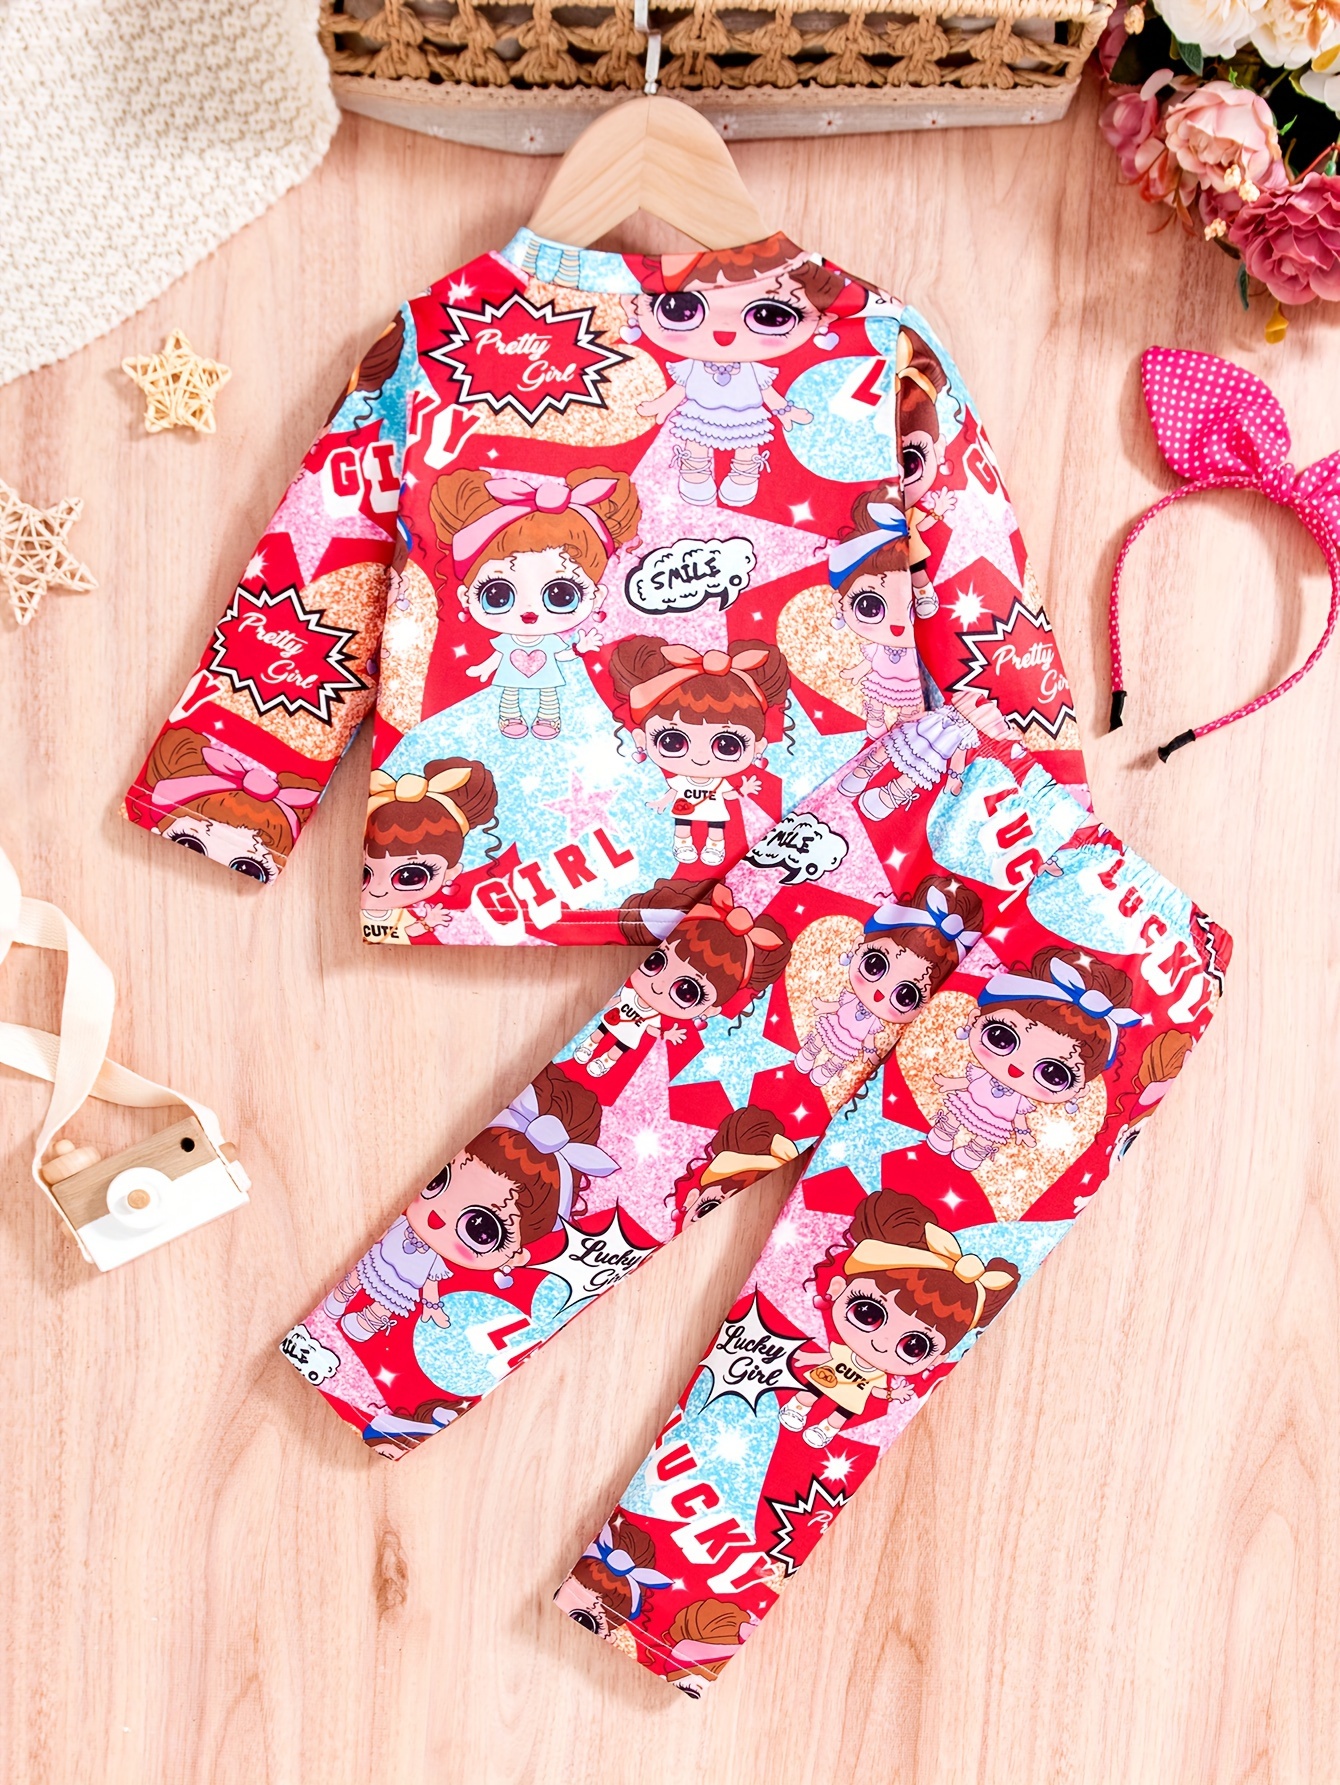 Girls 2 Piece Pajama Set